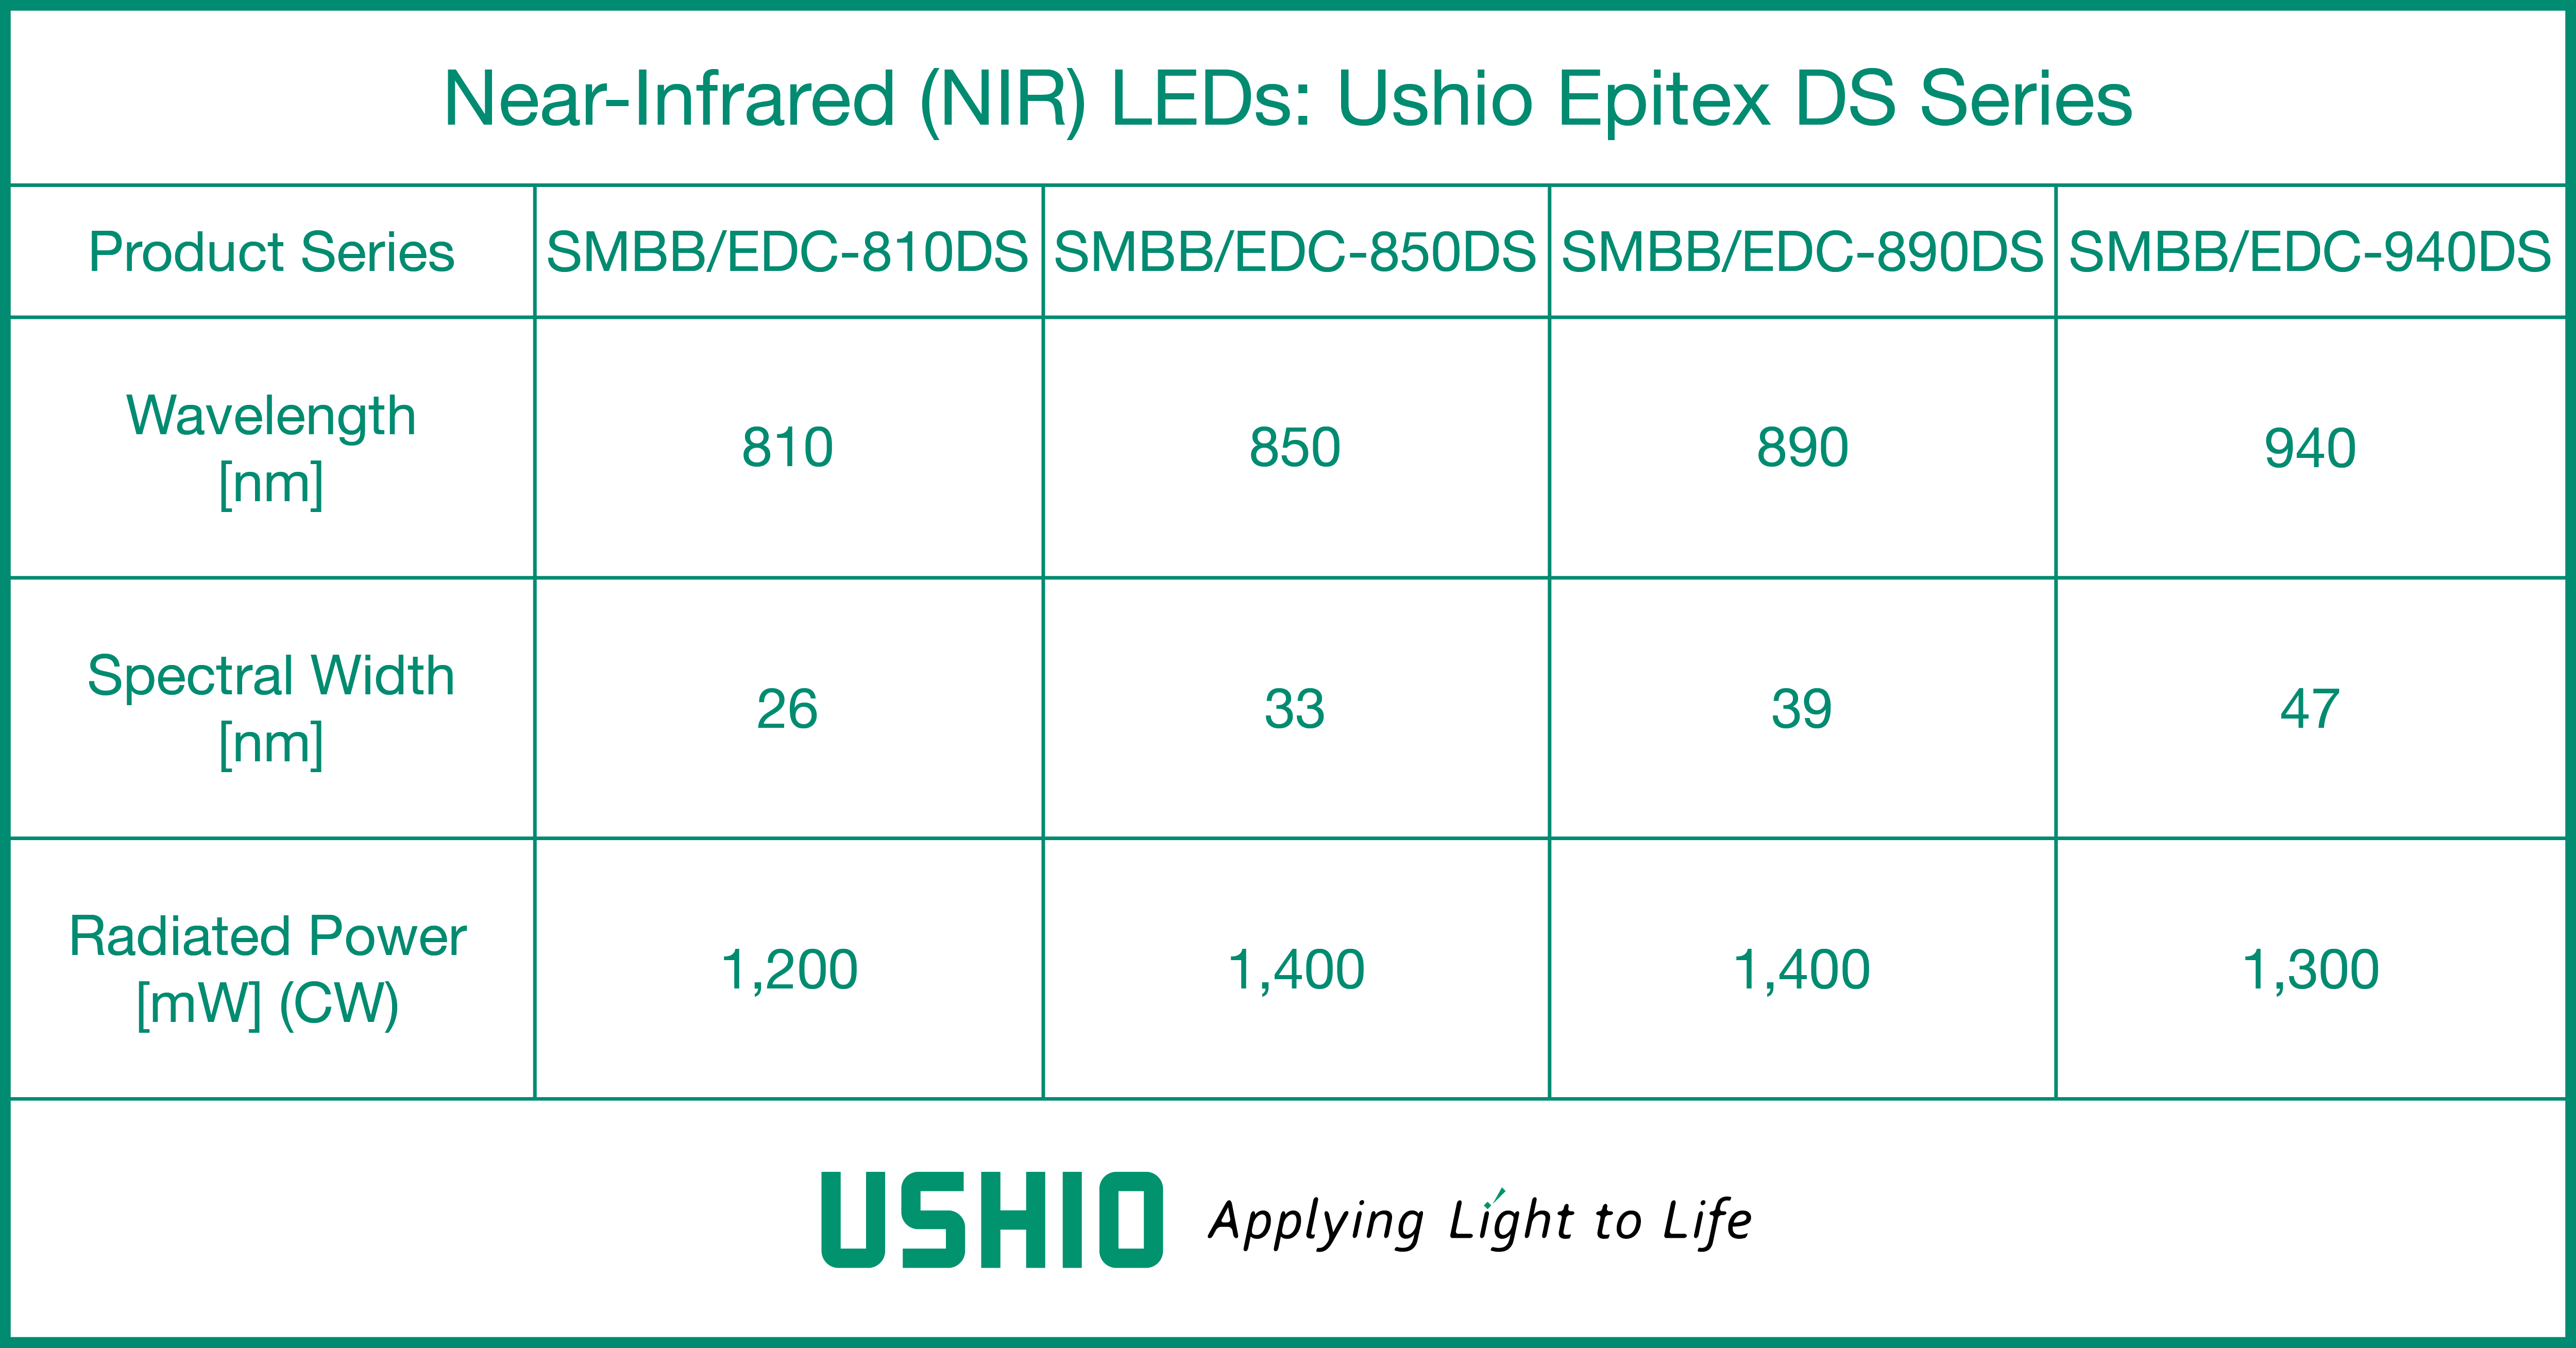 Ushio Epitex DS Series NIR LEDs